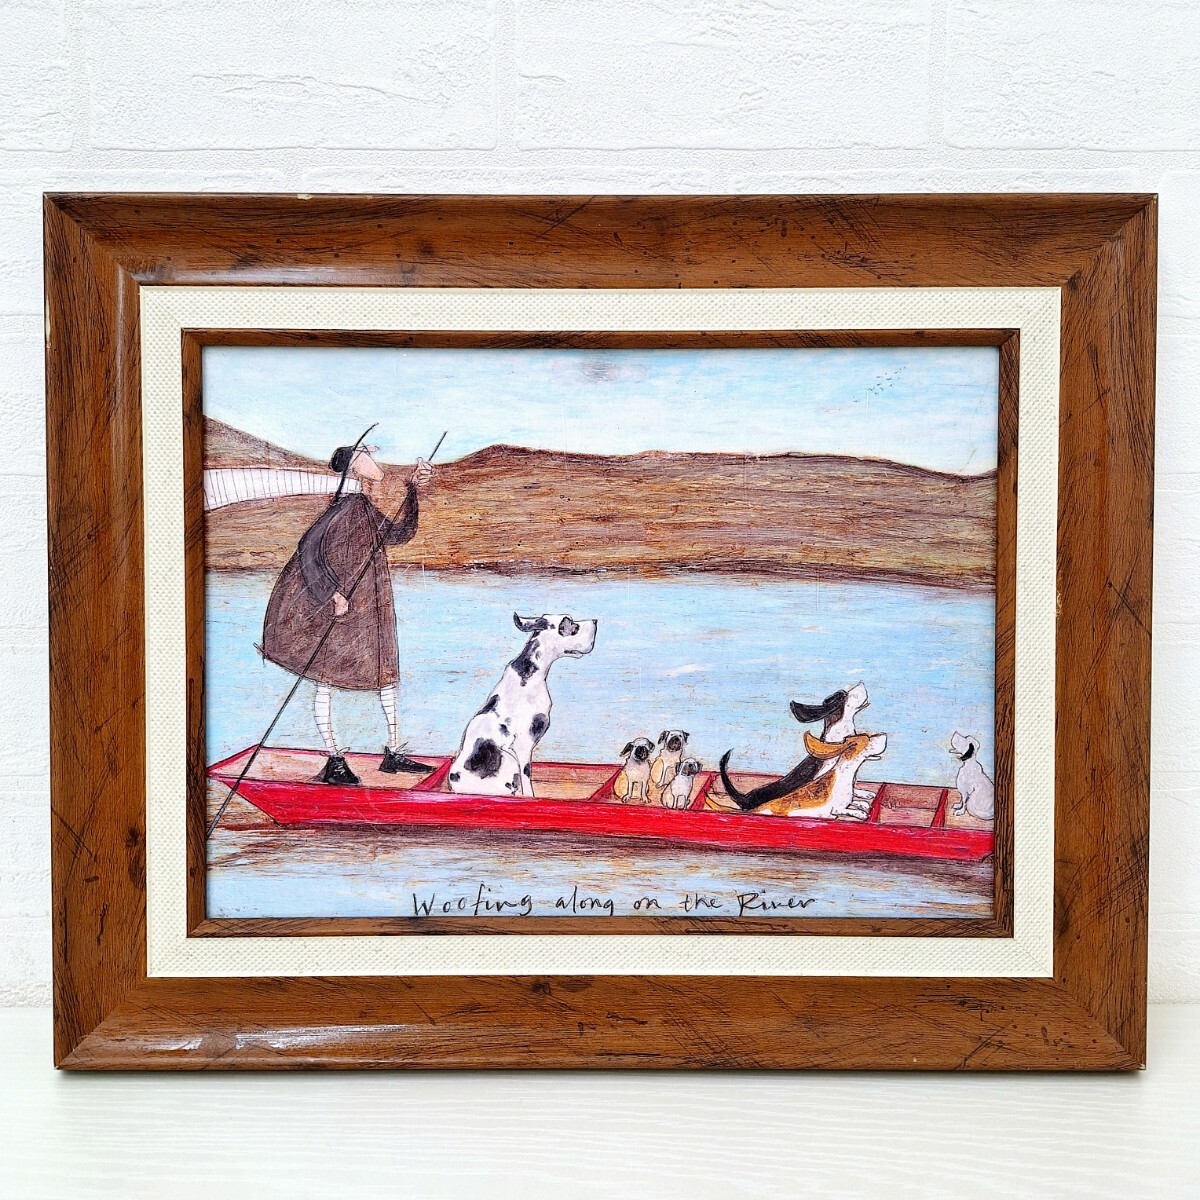 Samtoft Wan Wan crucero por el río pintura marco artístico perro río artista británico colgante de pared Interior pintura al óleo arte WK, muebles, interior, Accesorios de interior, otros